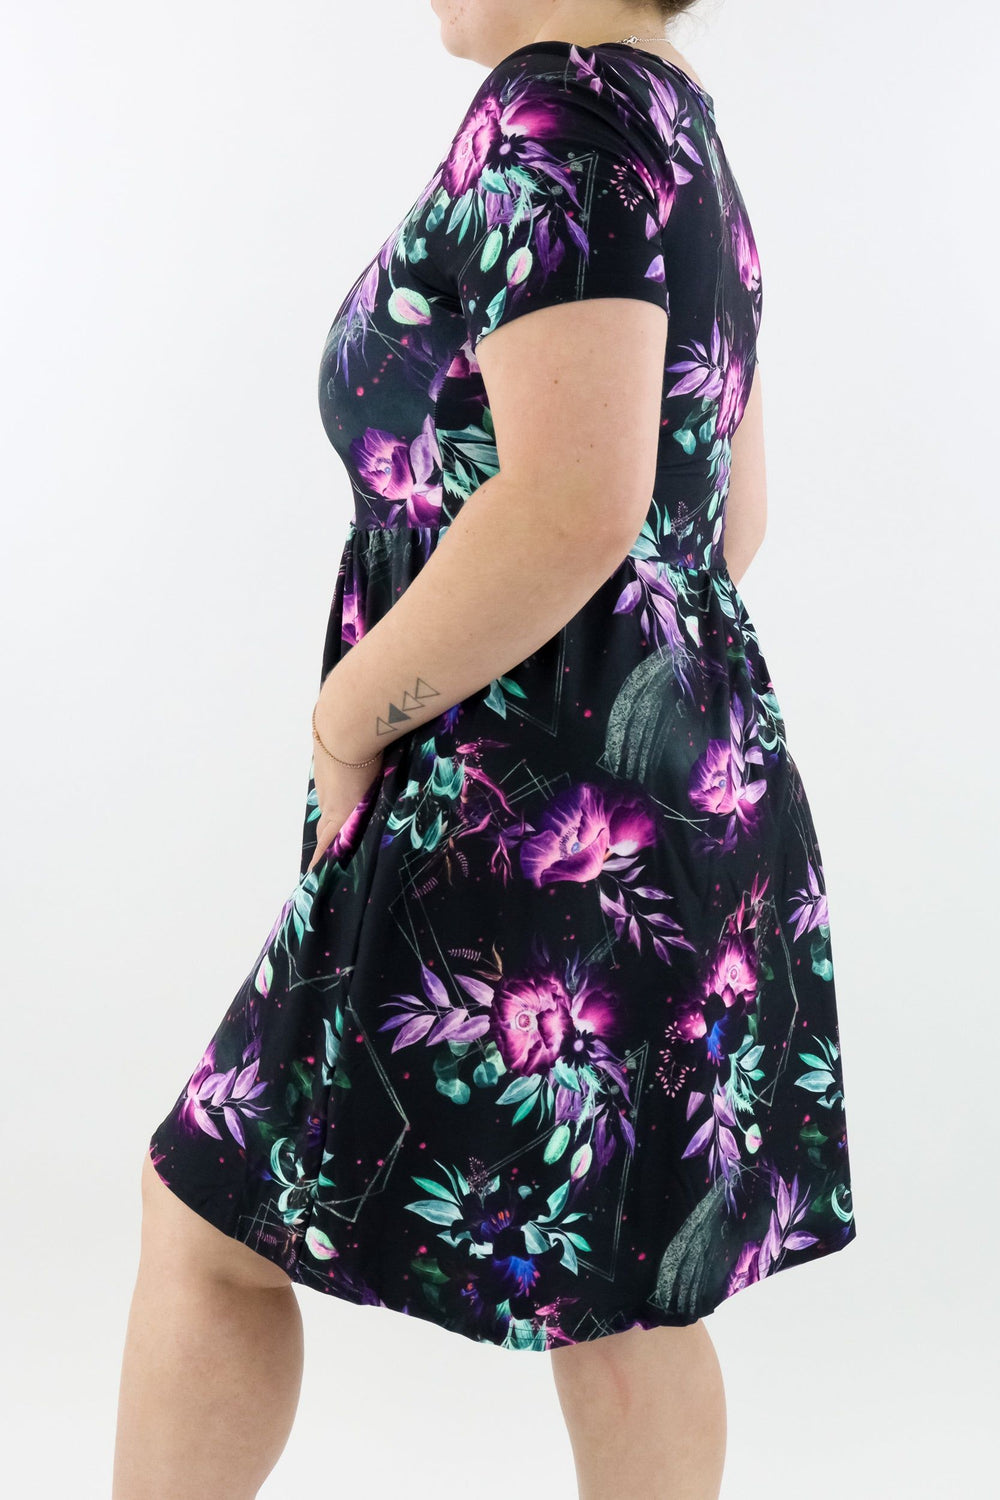 Evanescent Flower - Short Sleeve Skater Dress - Knee Length - Side Pockets Knee Length Skater Dress Pawlie   